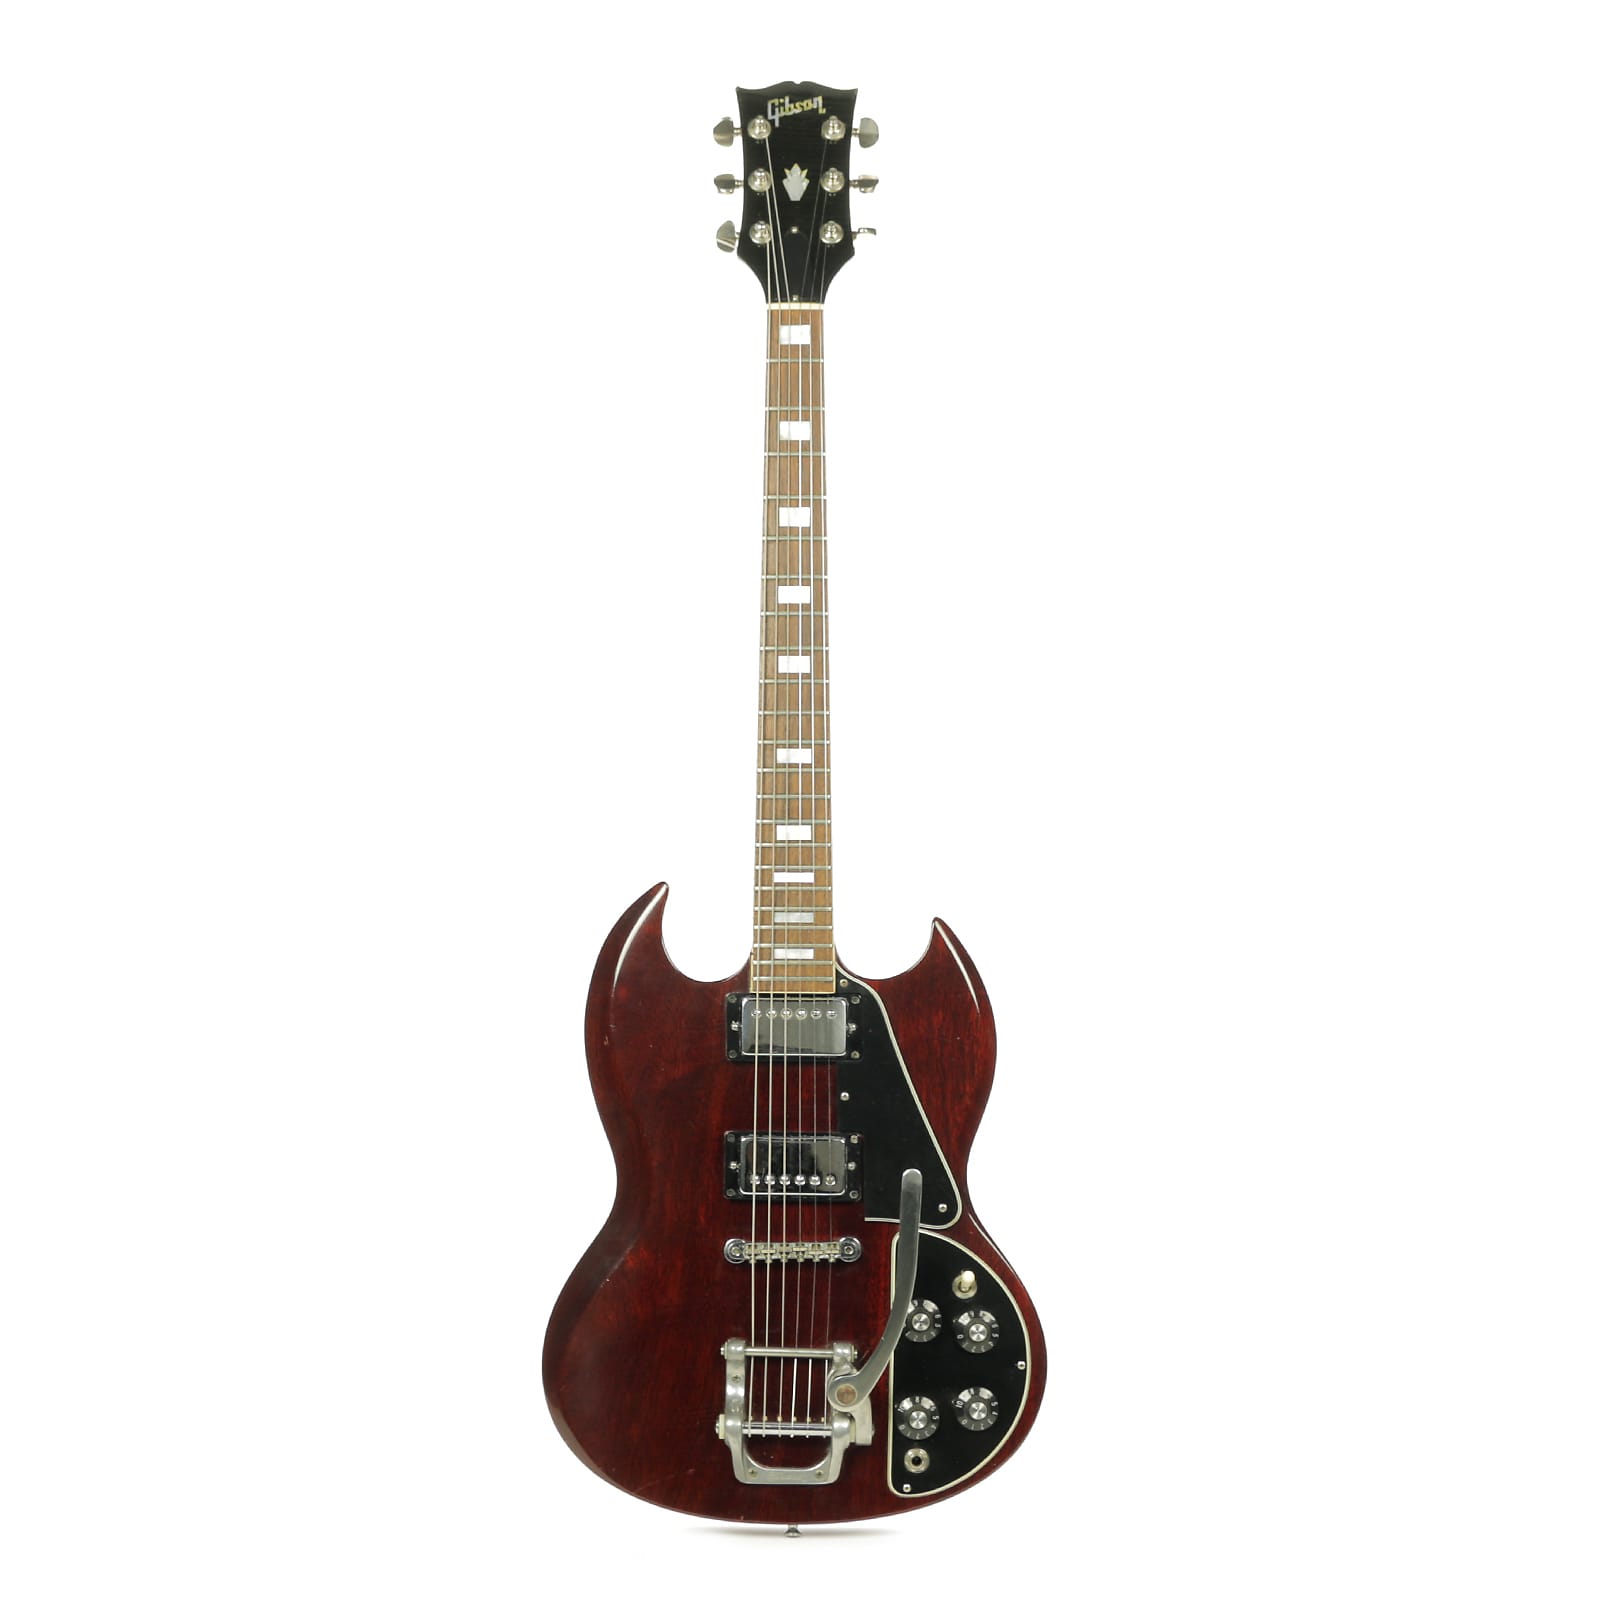 Tick Ændringer fra Antologi Gibson SG Deluxe 1970 - 1974 | Reverb